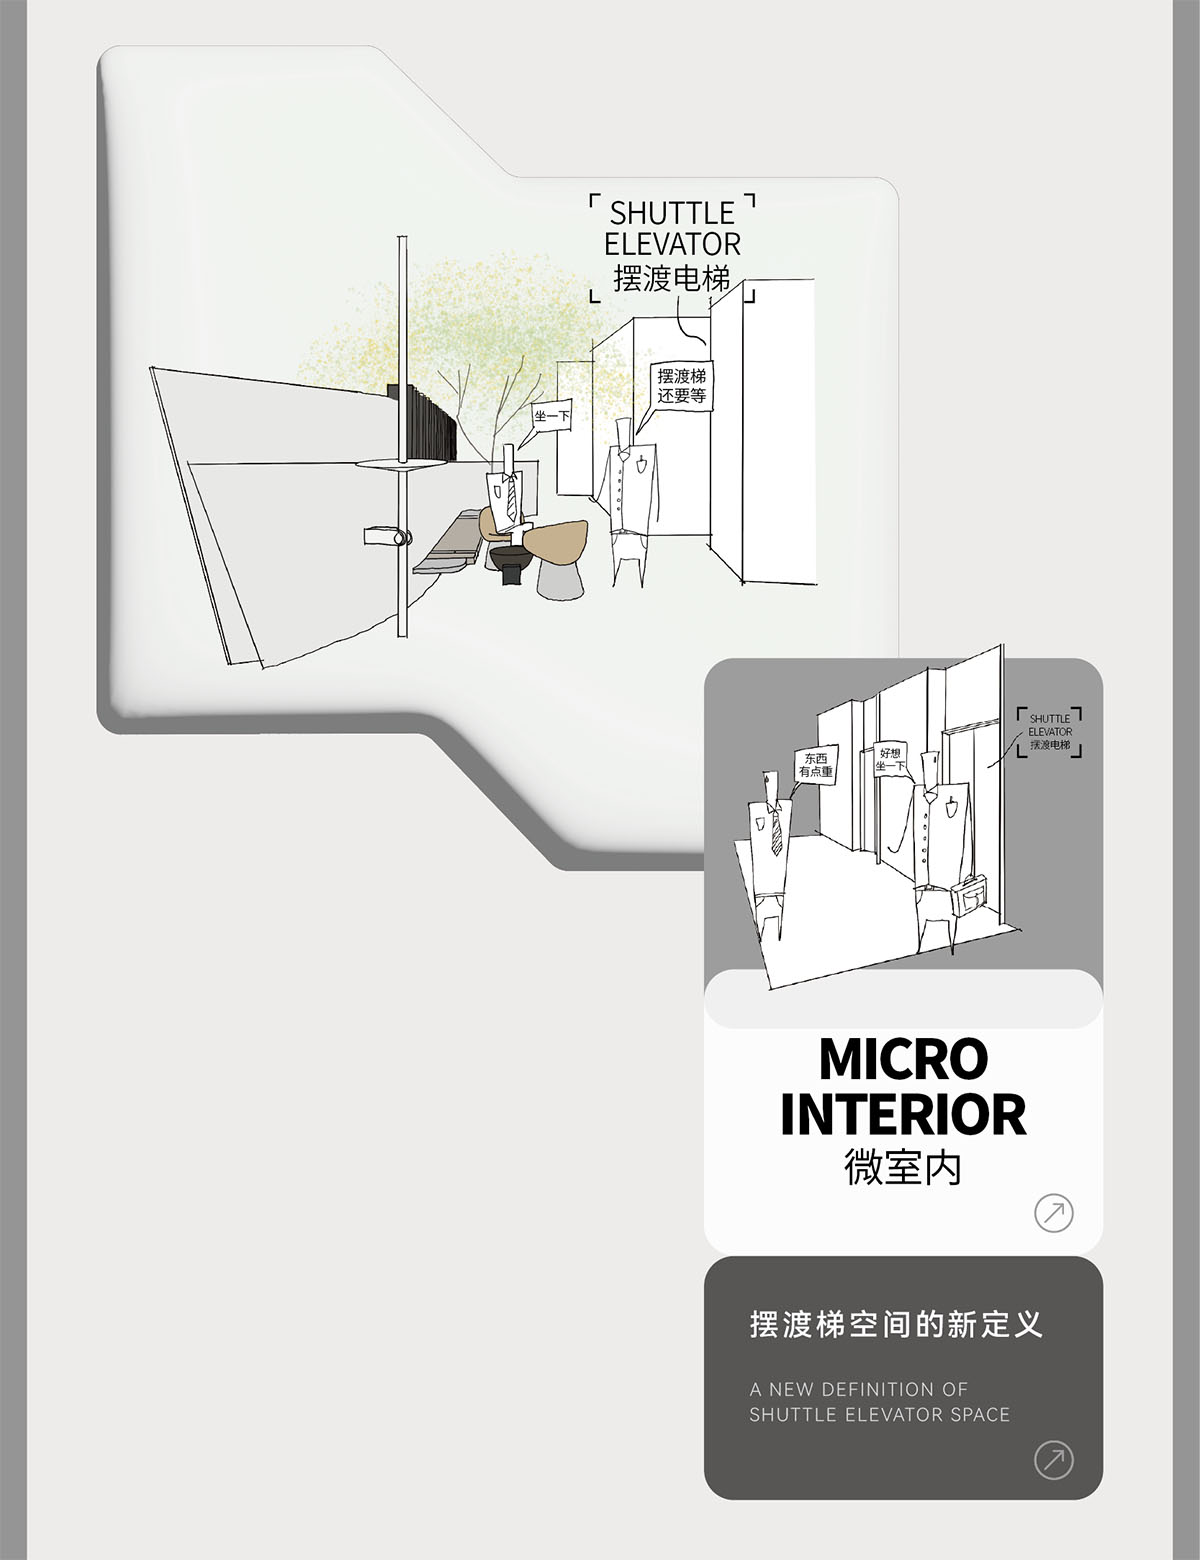 接待大堂设计,办公楼接待大堂设计,电梯间设计,公共空间设计,办公楼卫生间设计,杭州黄龙国际中心四期「微交互」拟态未来办公方式,杭州,TOMO東木筑造